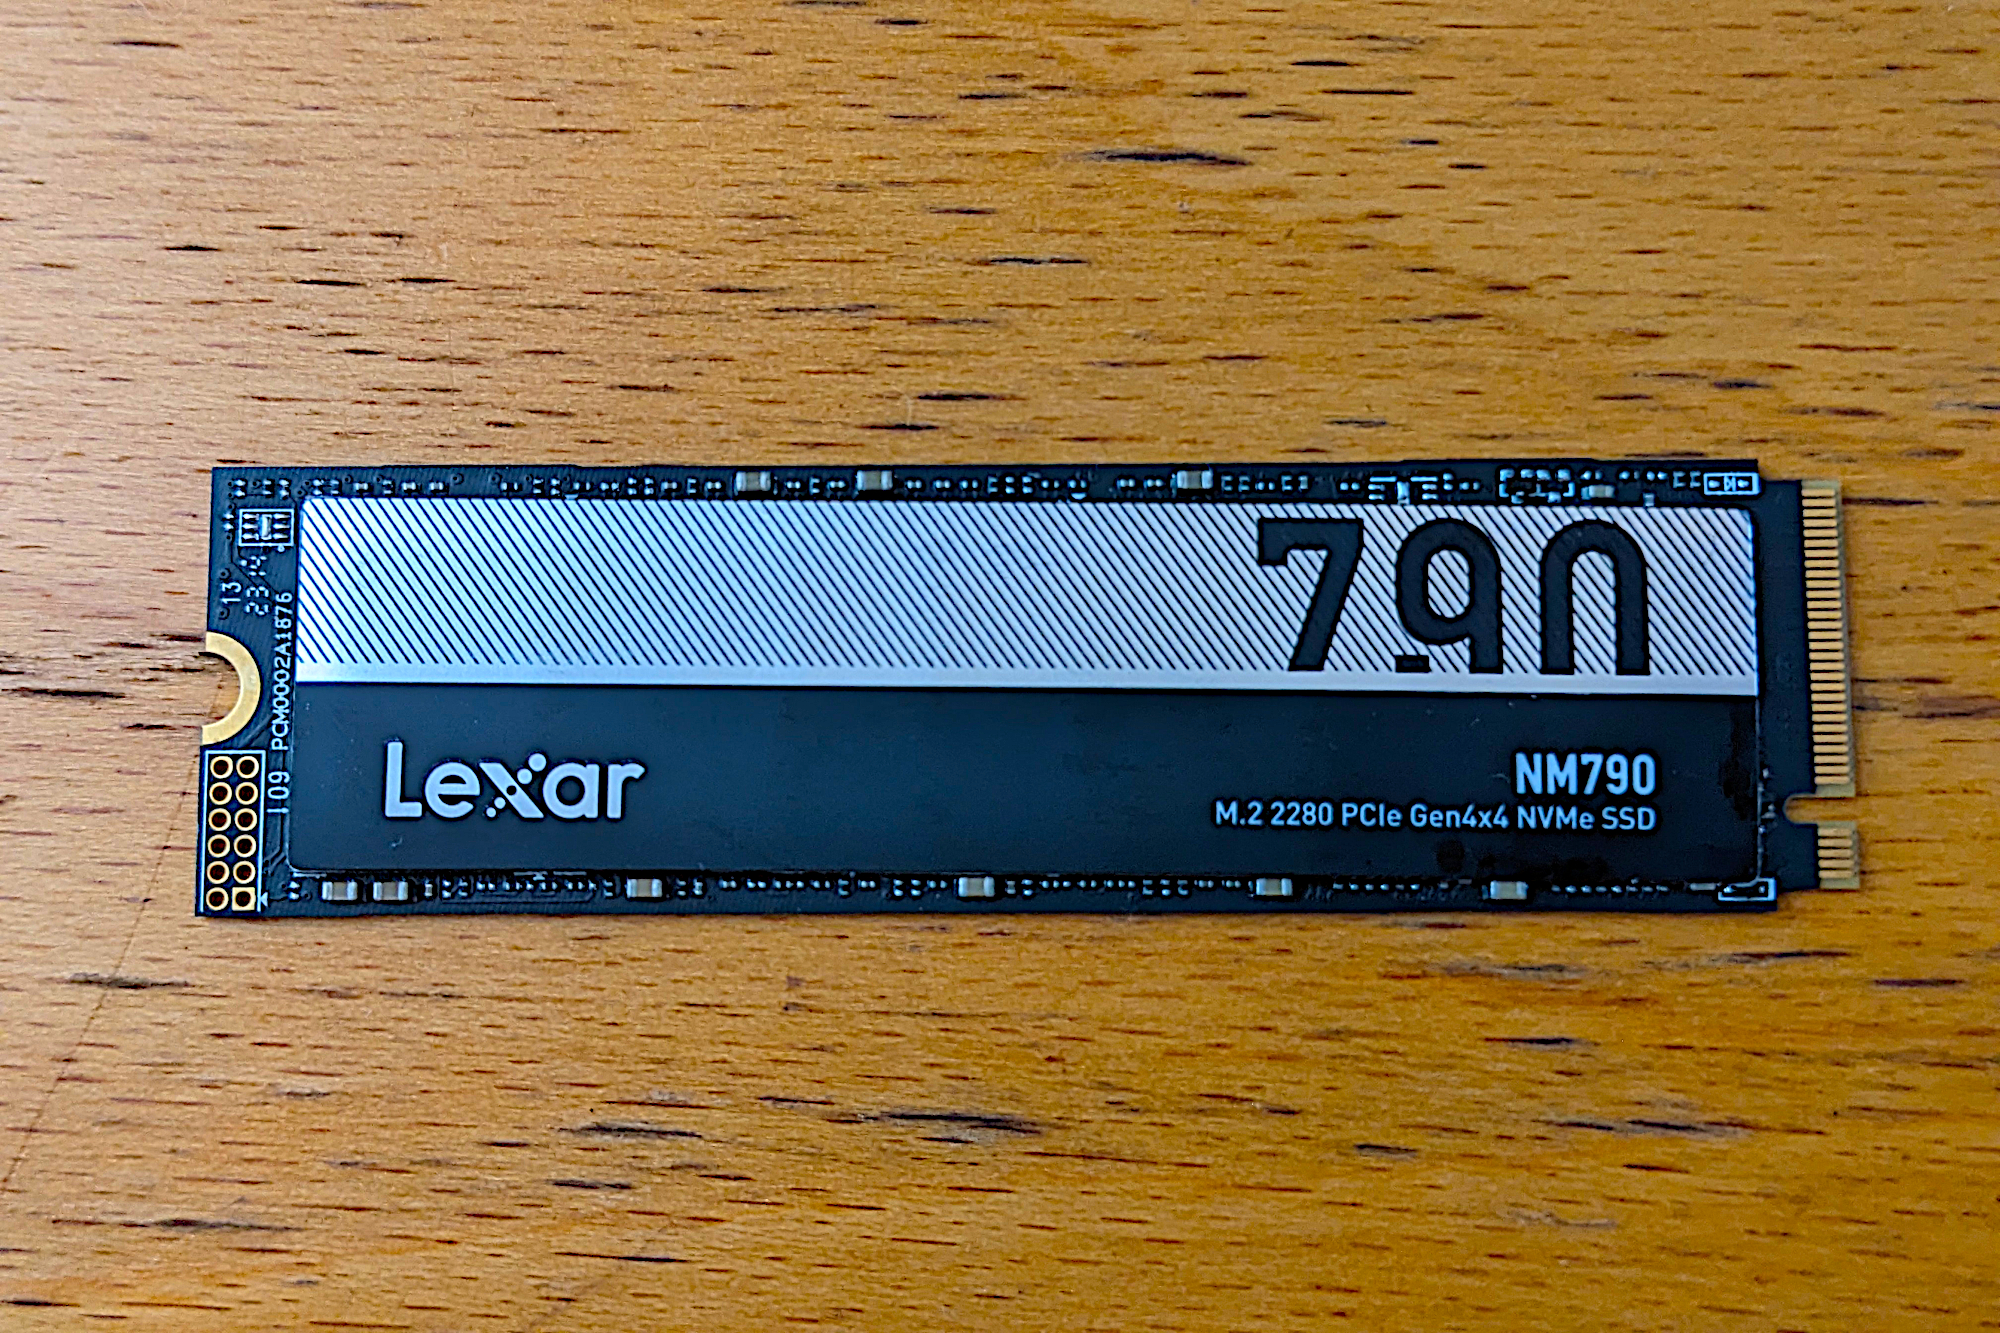 Lexar NM790 NVMe SSD